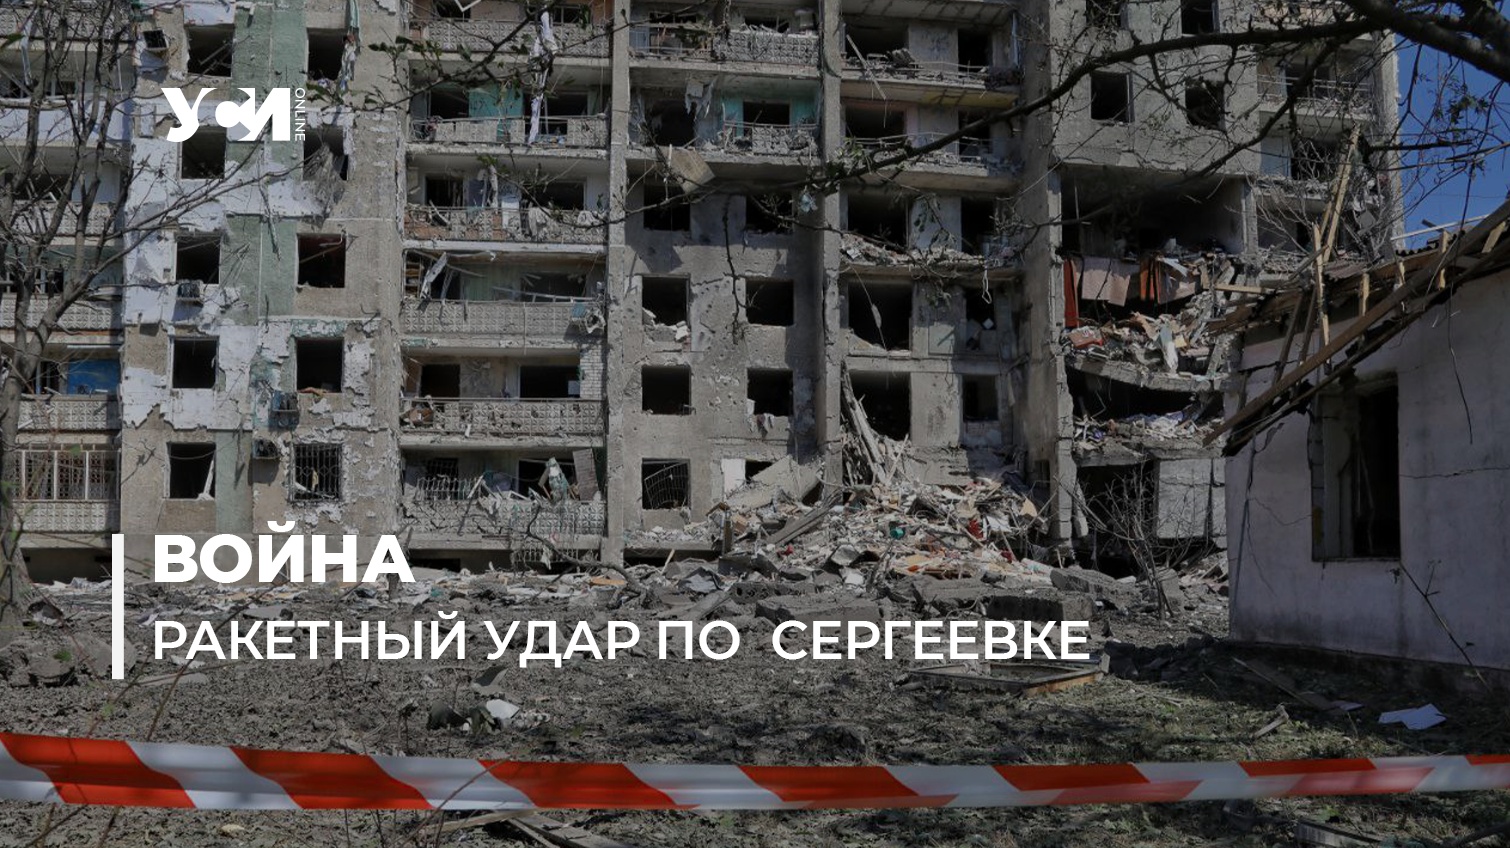 Спасатели работают над завалами в Сергеевке: количество жертв возросло (фото) «фото»